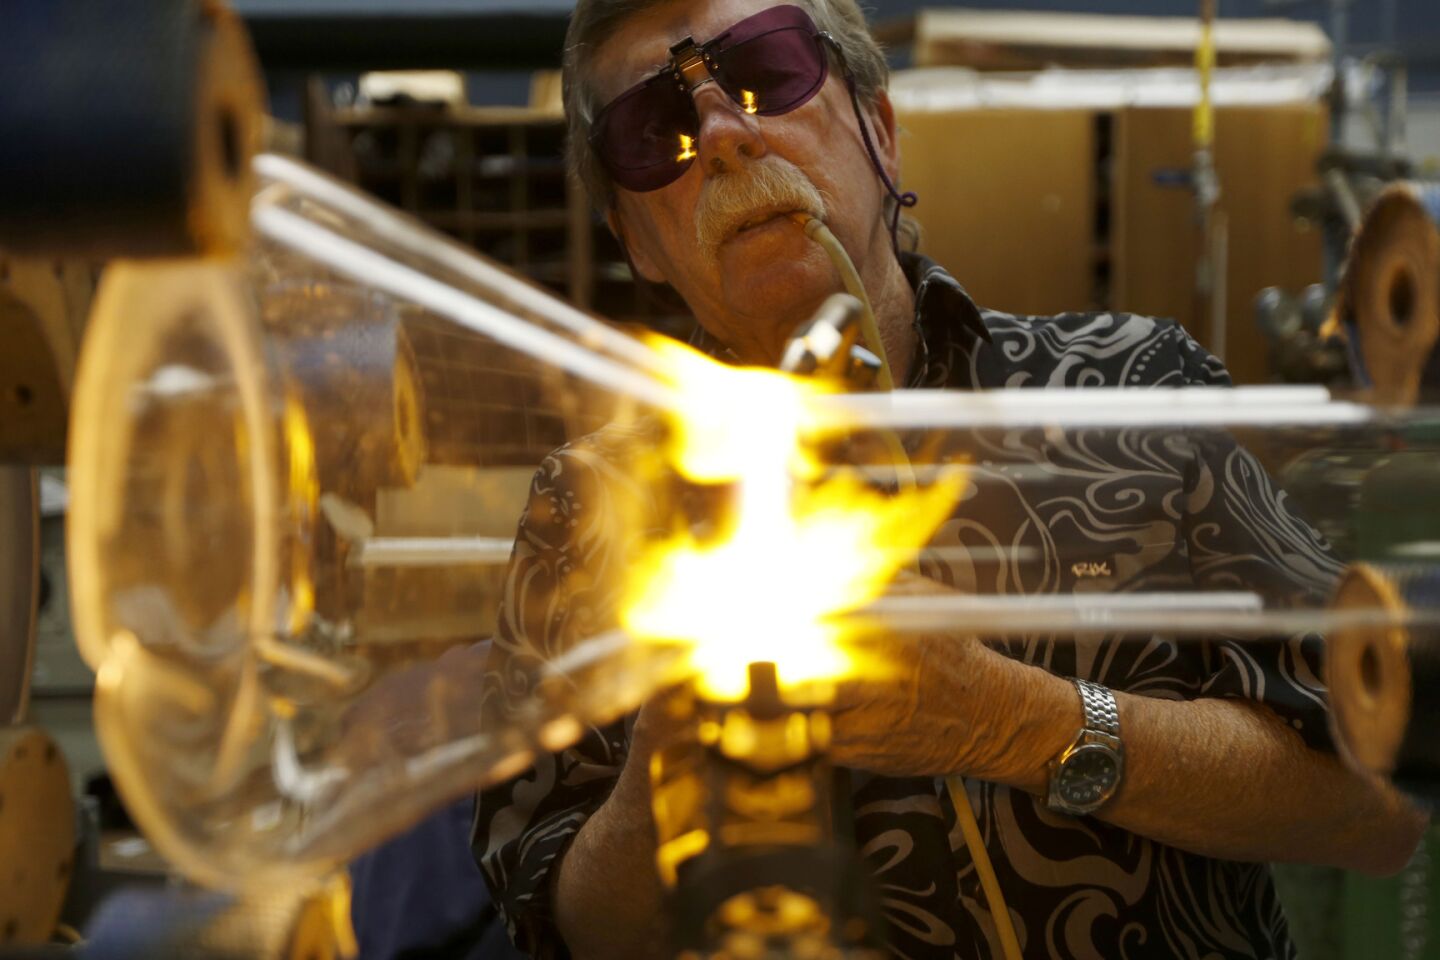 Caltech glass blower